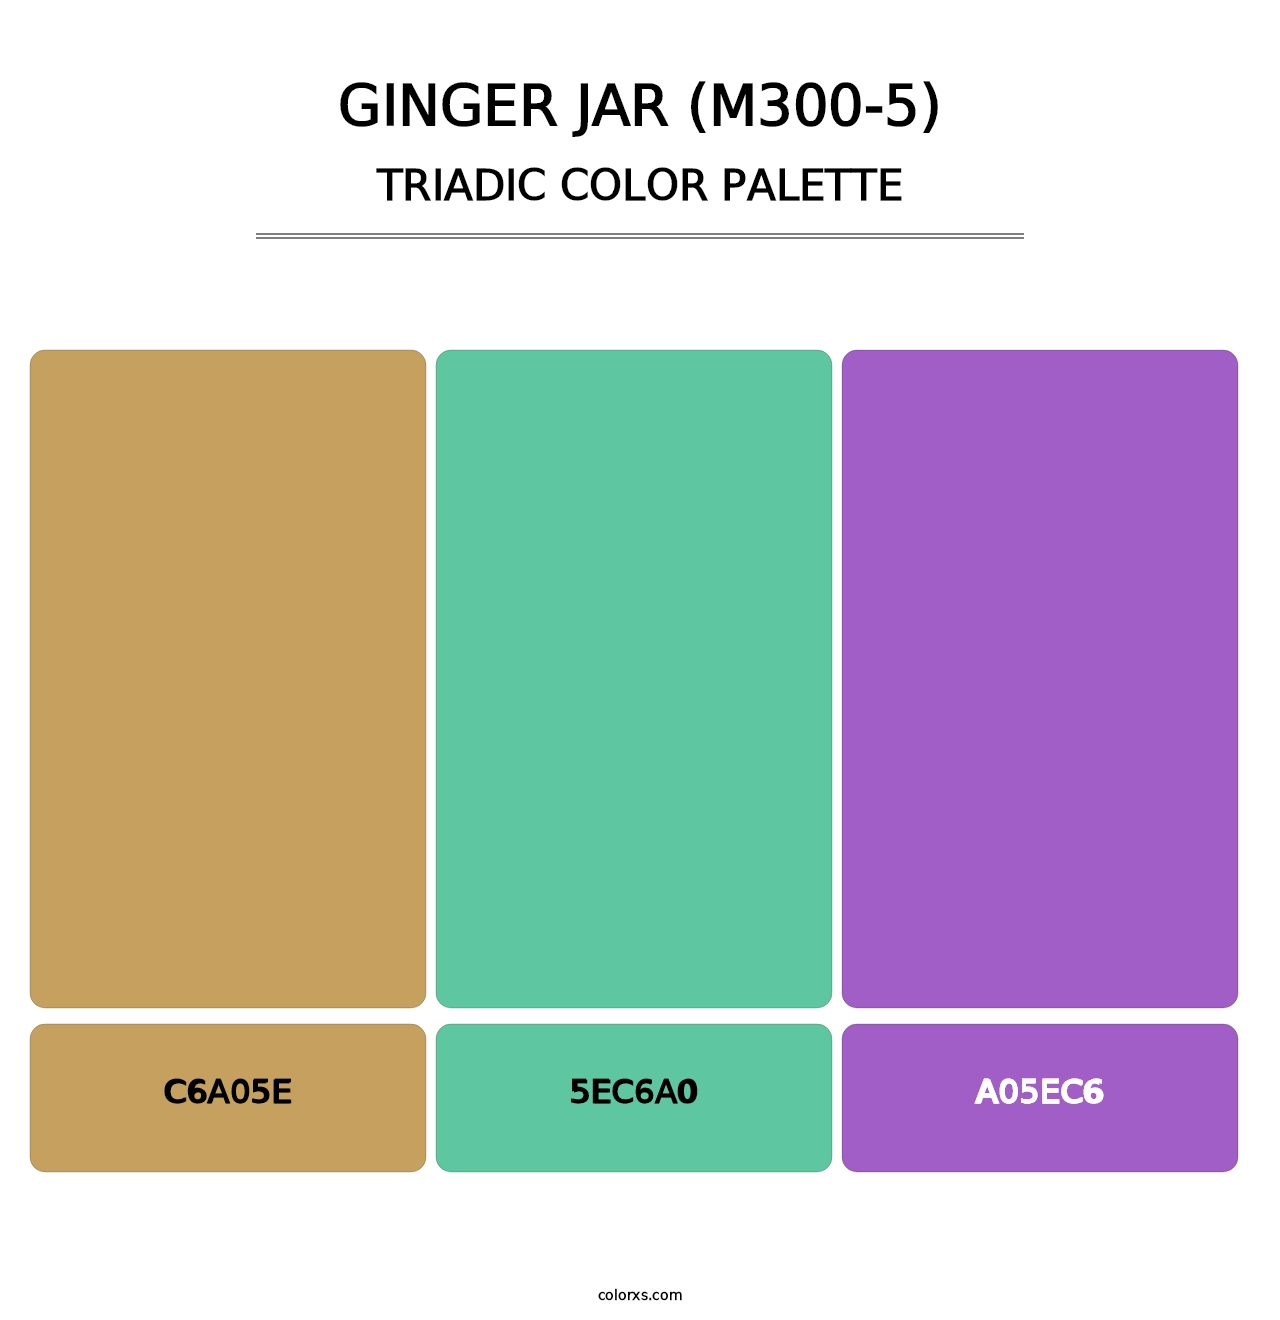 Ginger Jar (M300-5) - Triadic Color Palette